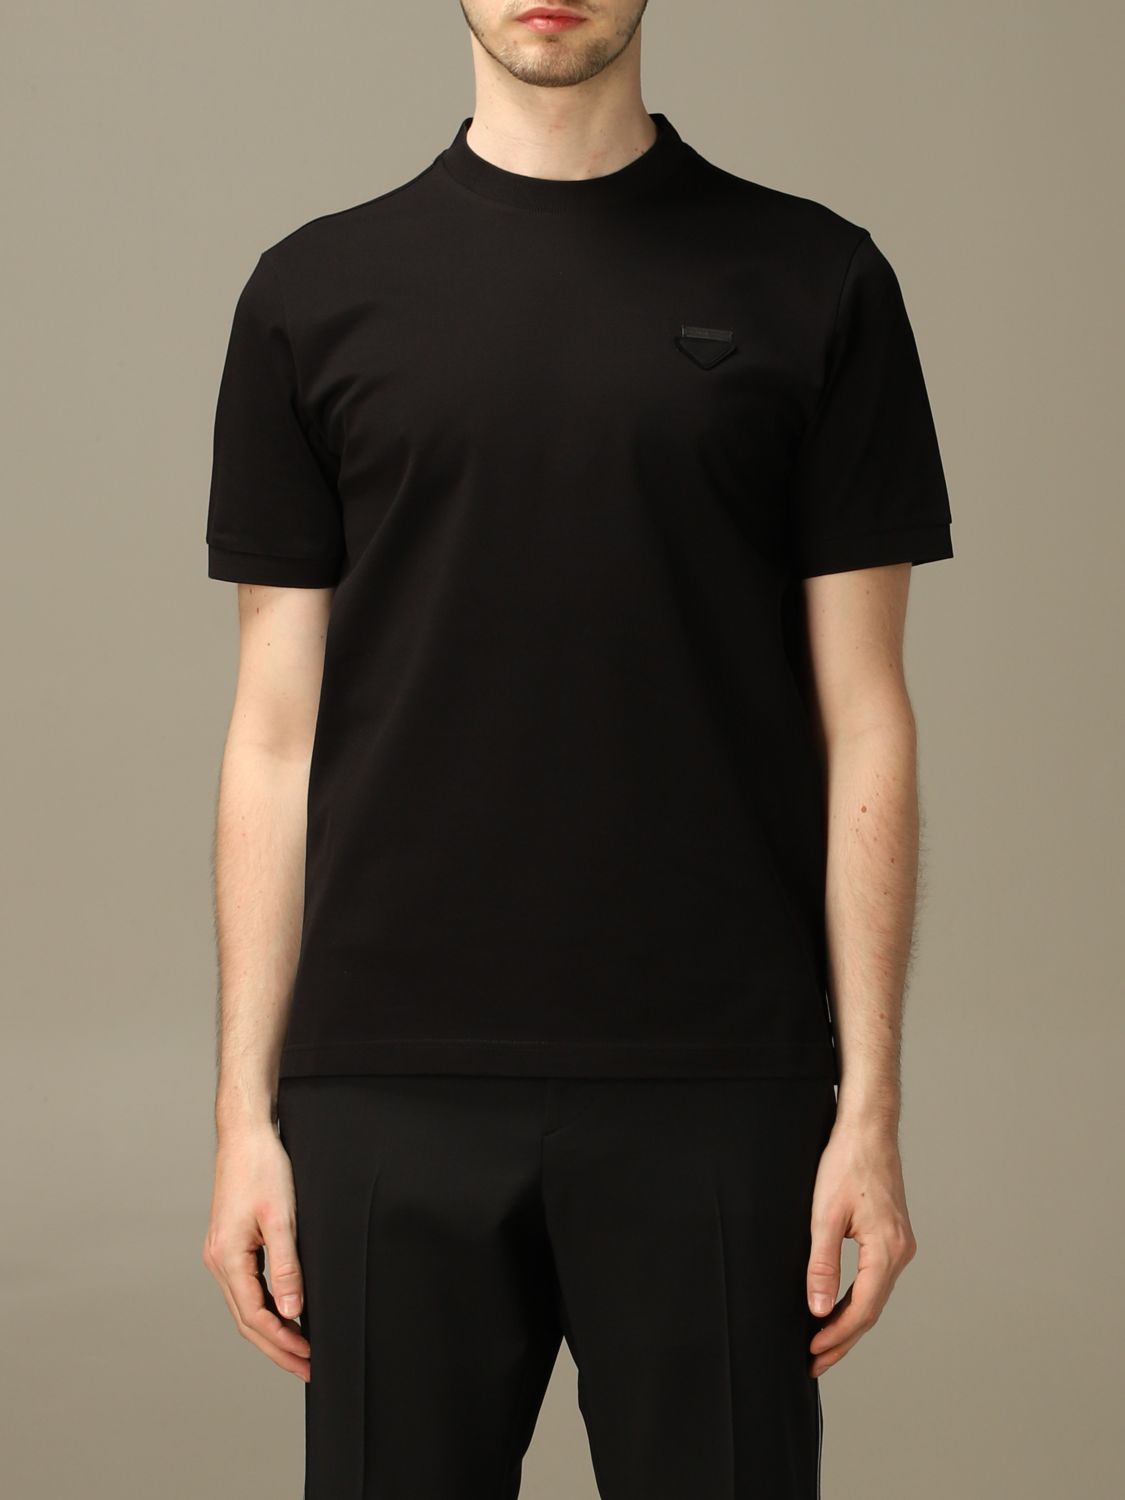 PRADA: pique cotton T-shirt with triangular logo - Black | Prada t